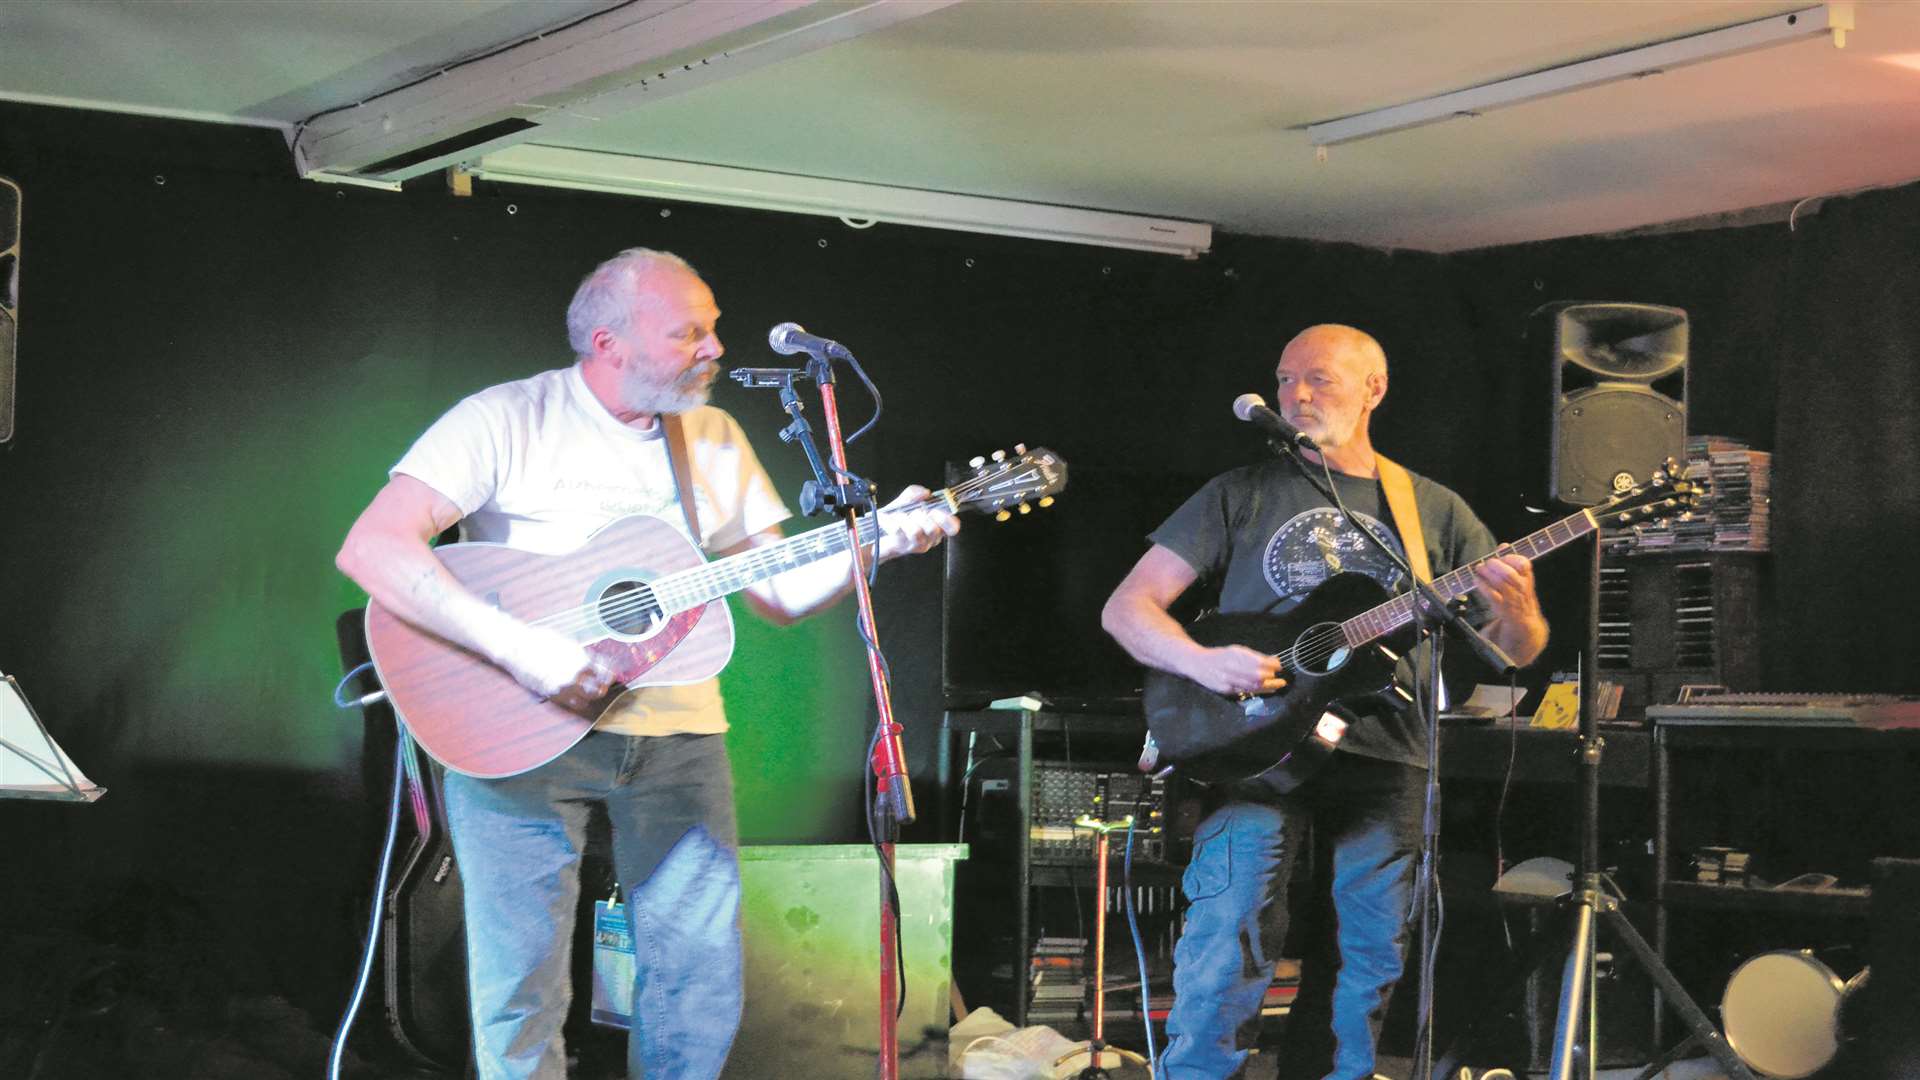 The pair performing at the Marina Bar in Borstal